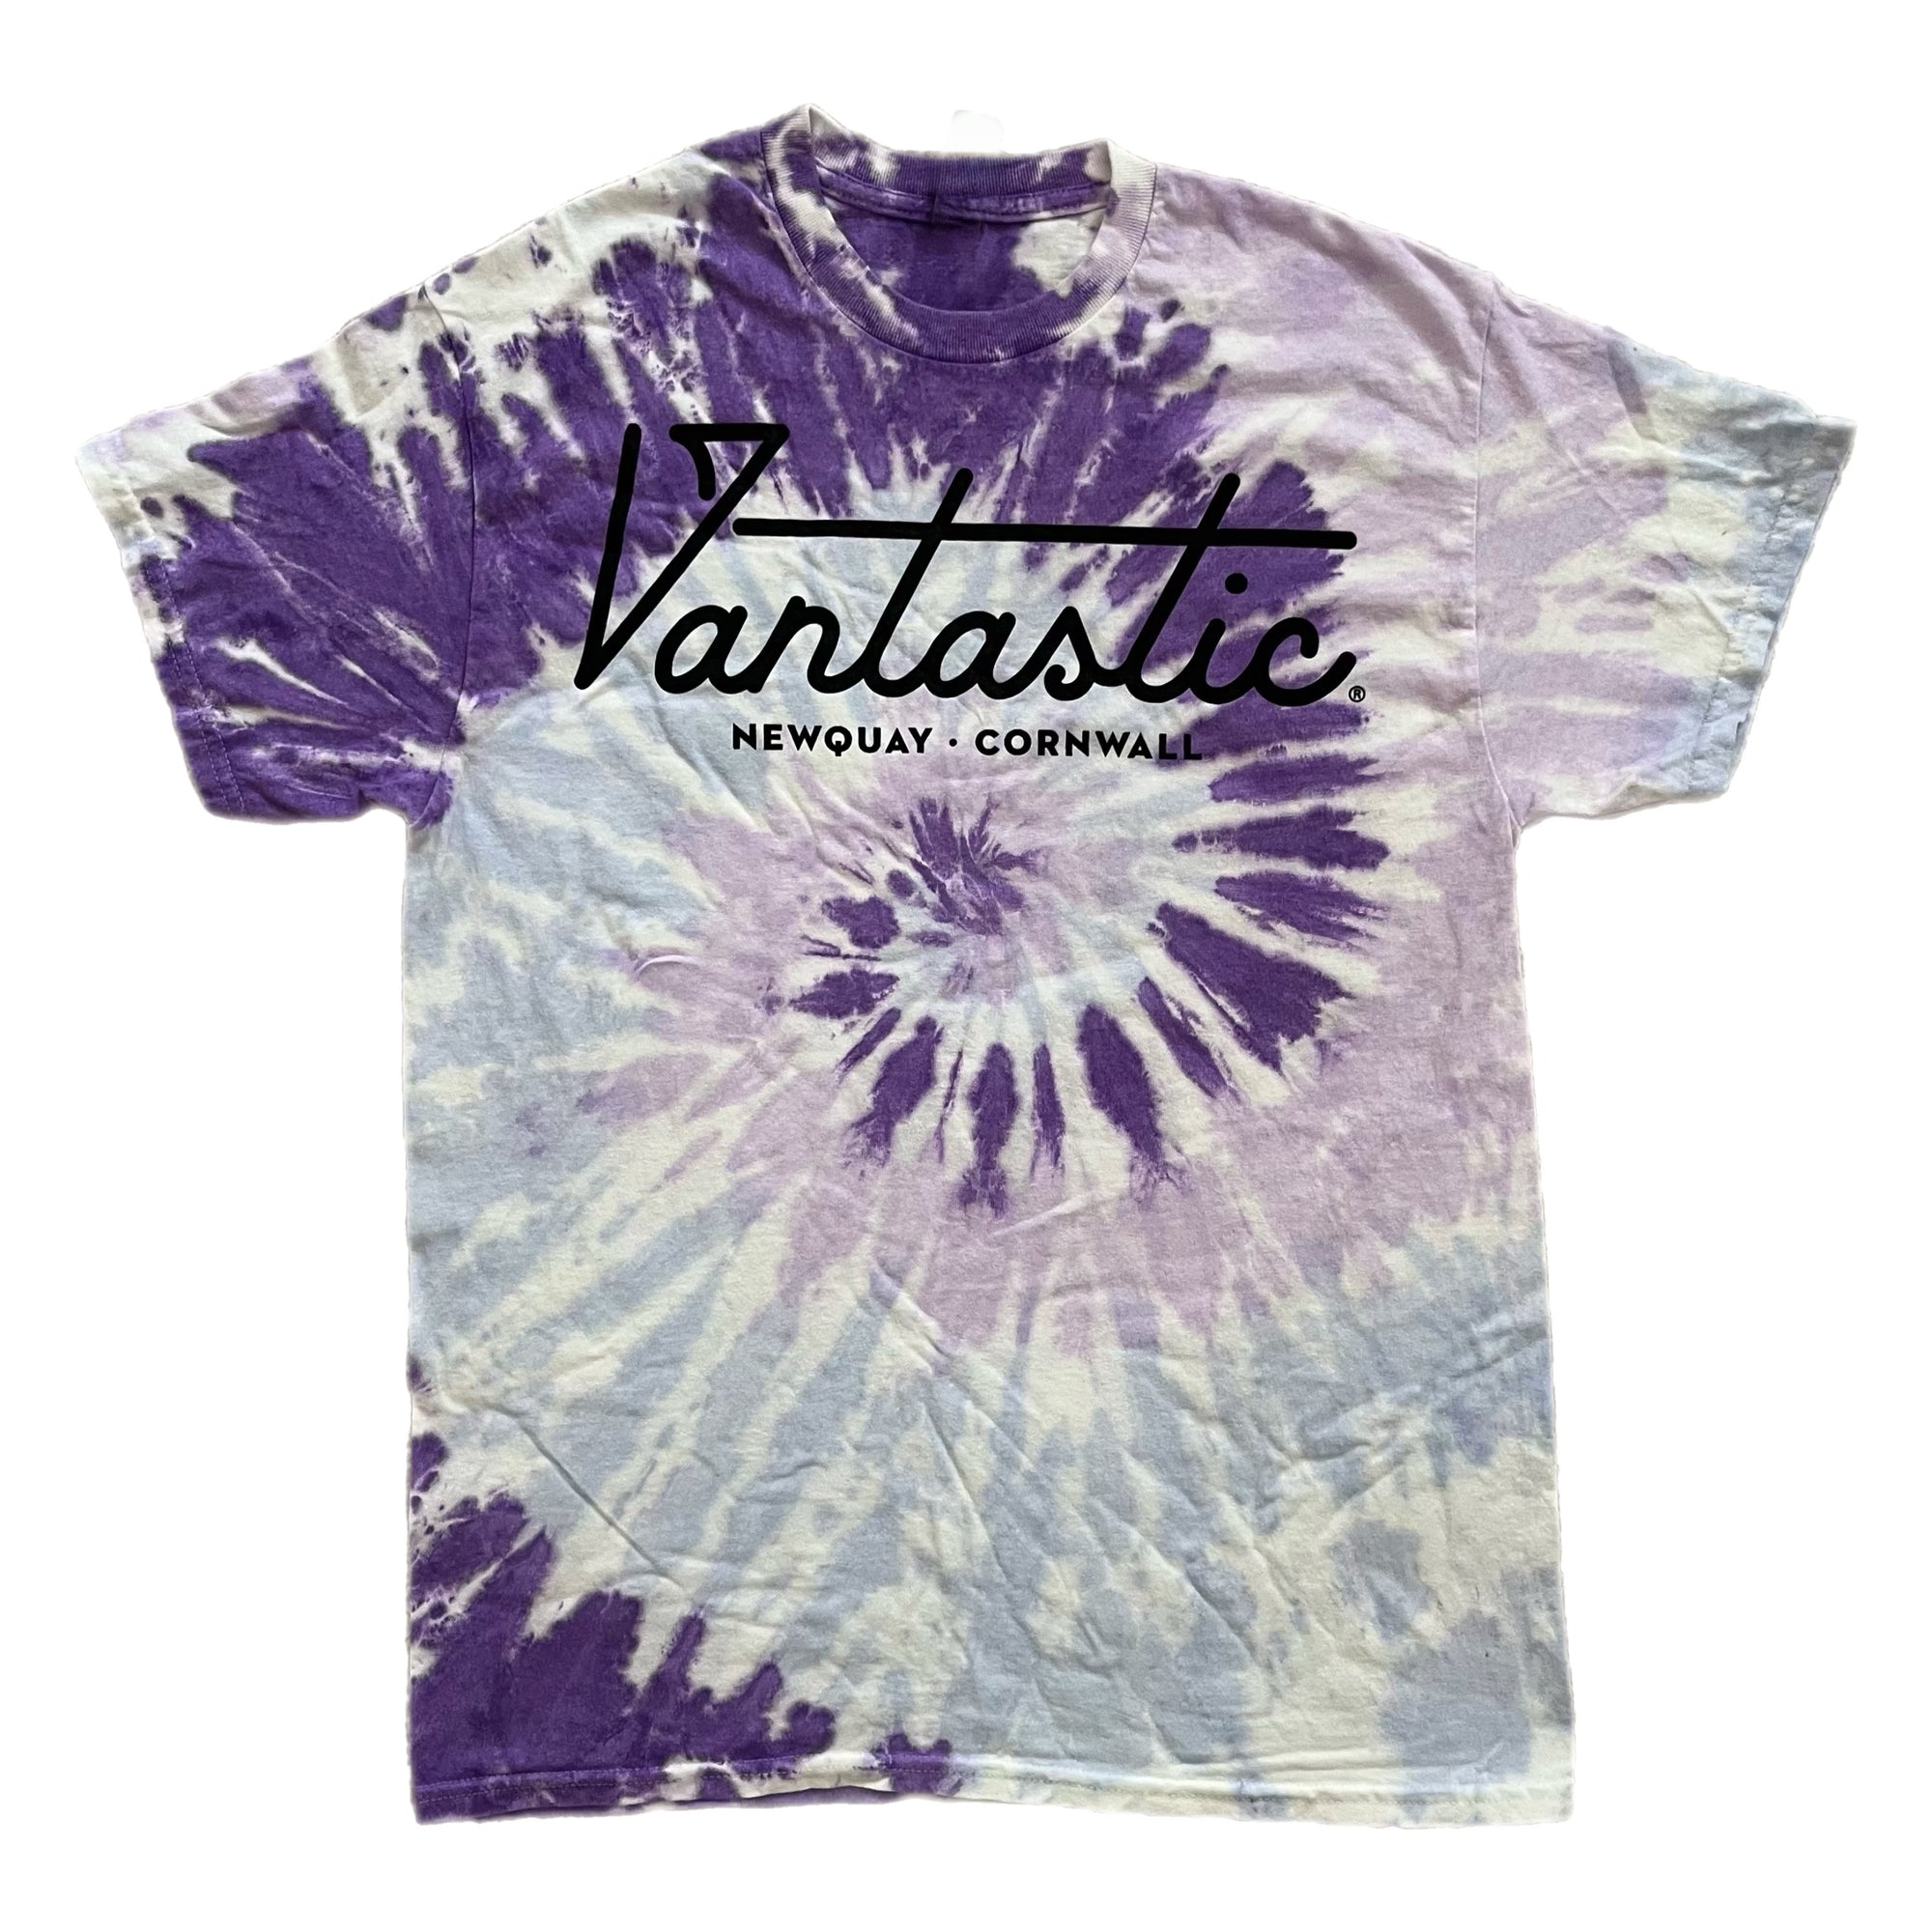 Tie-dye t-shirt - purple swirl